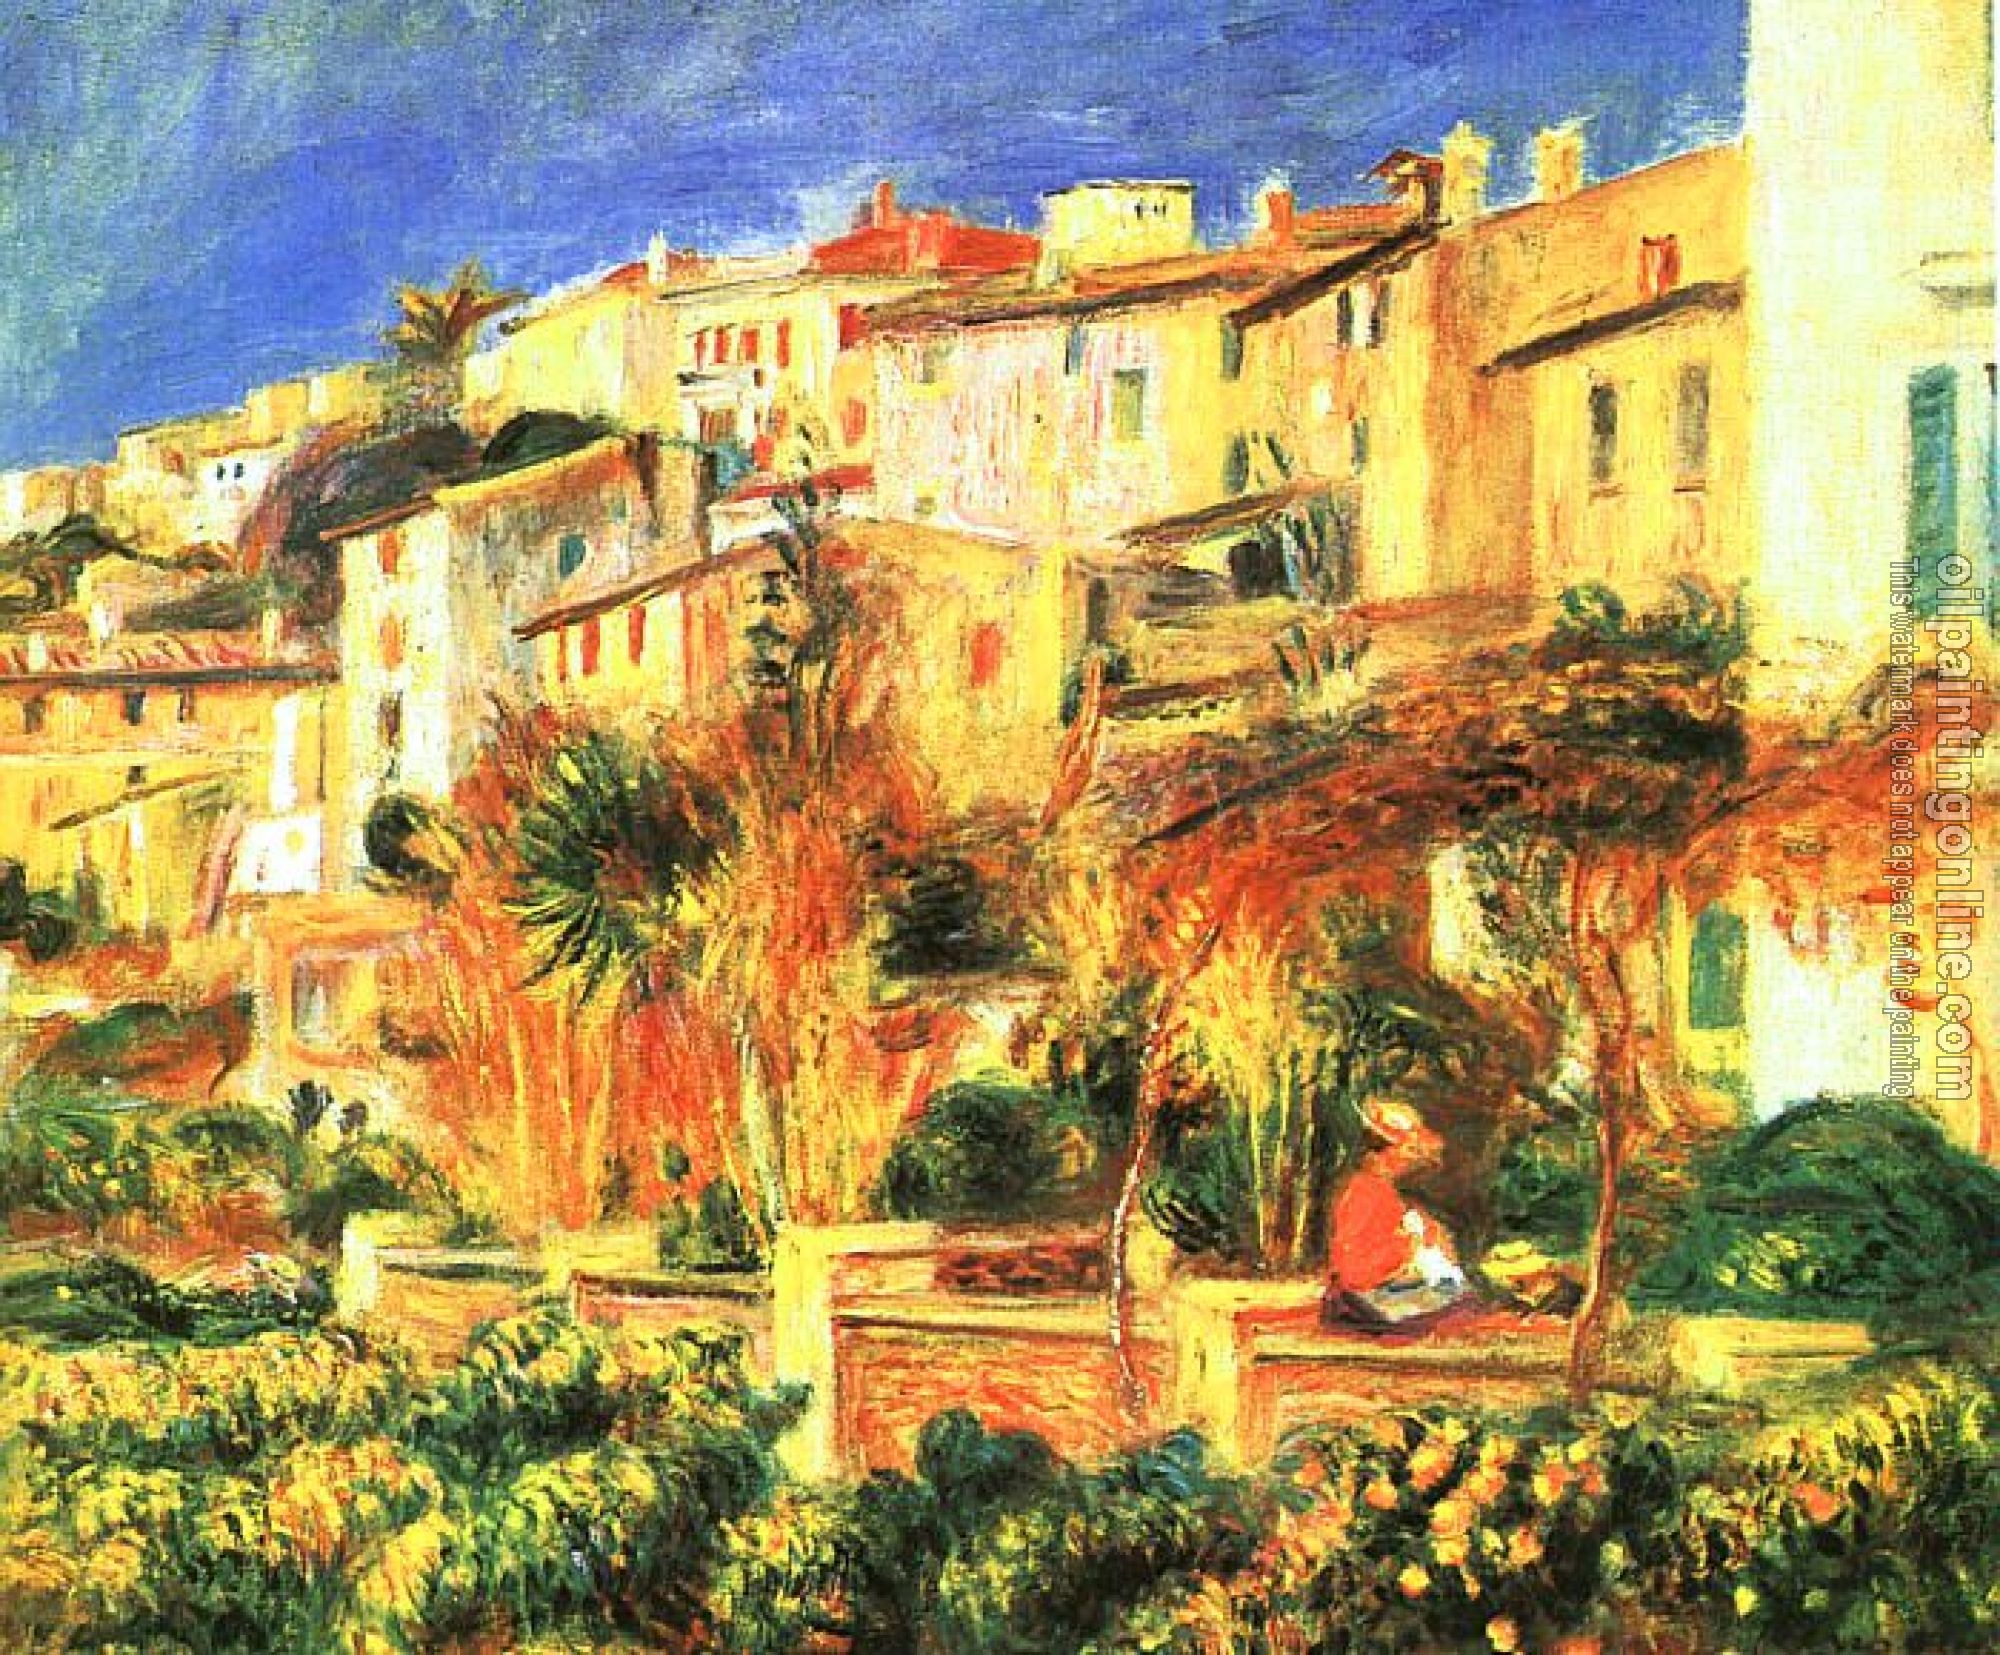 Renoir, Pierre Auguste - Terrace in Cagnes